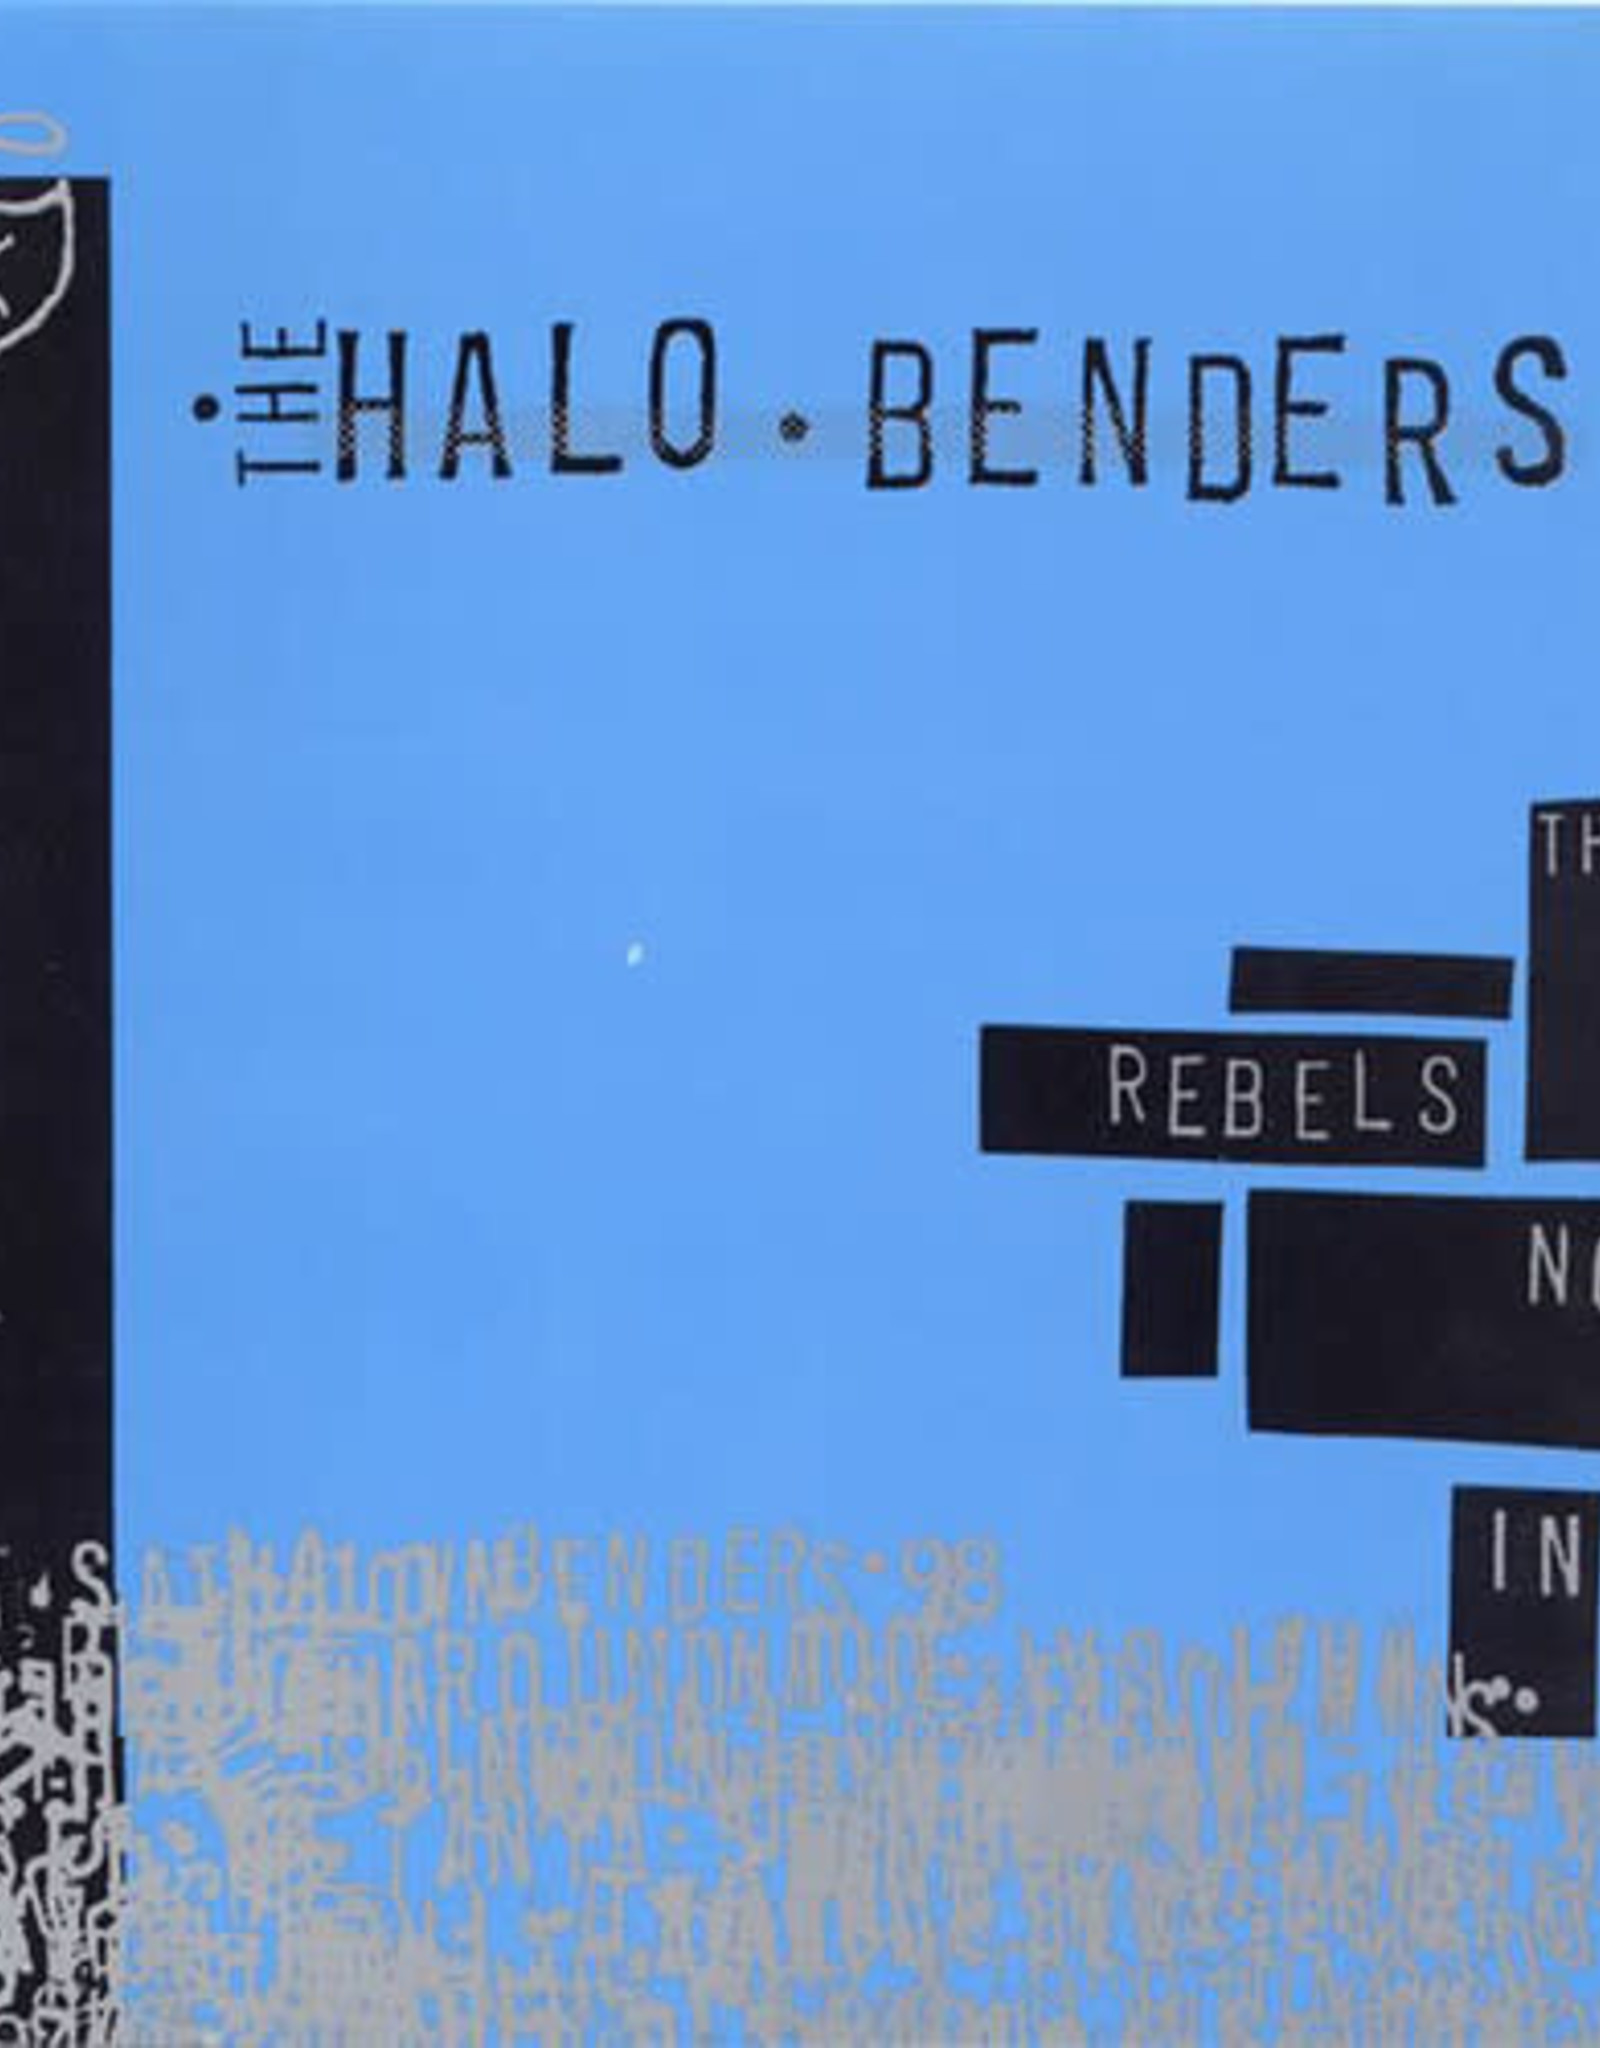 Halo Benders - Rebels Not in